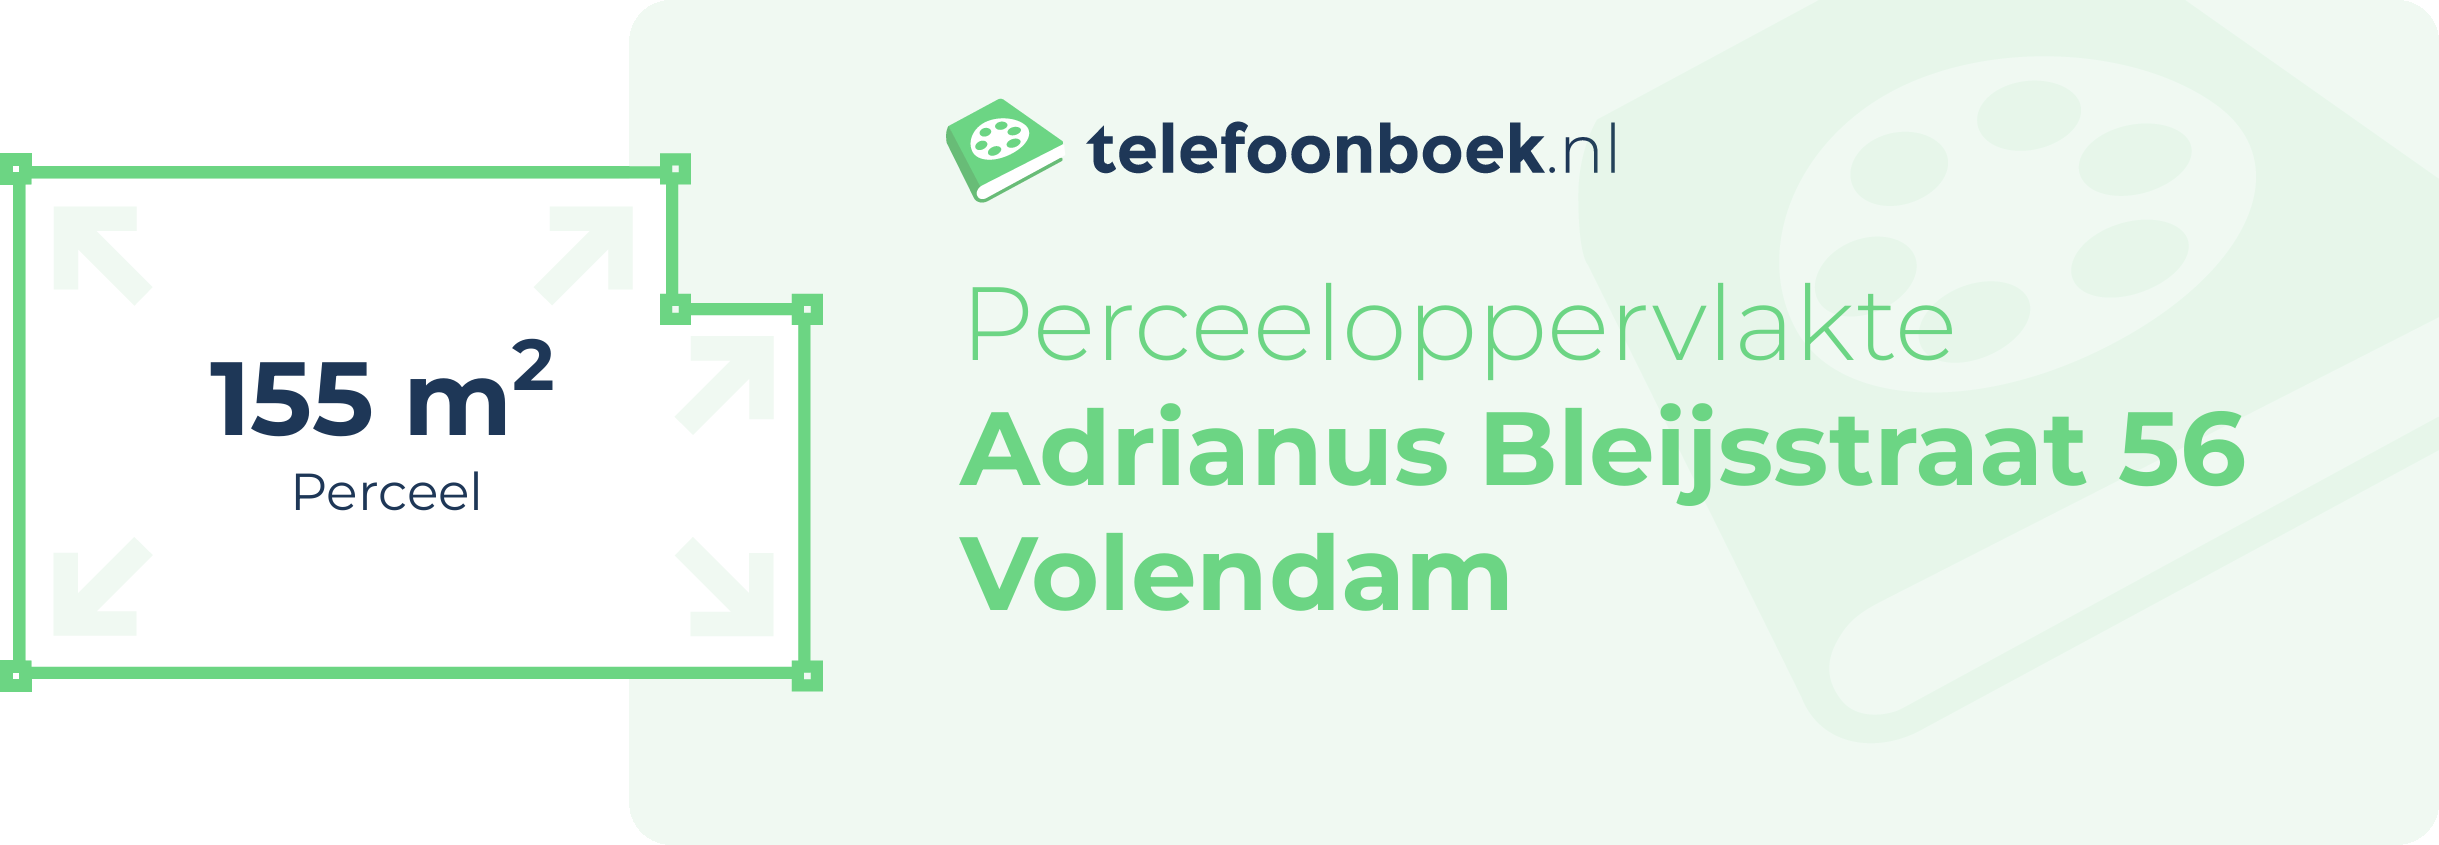 Perceeloppervlakte Adrianus Bleijsstraat 56 Volendam